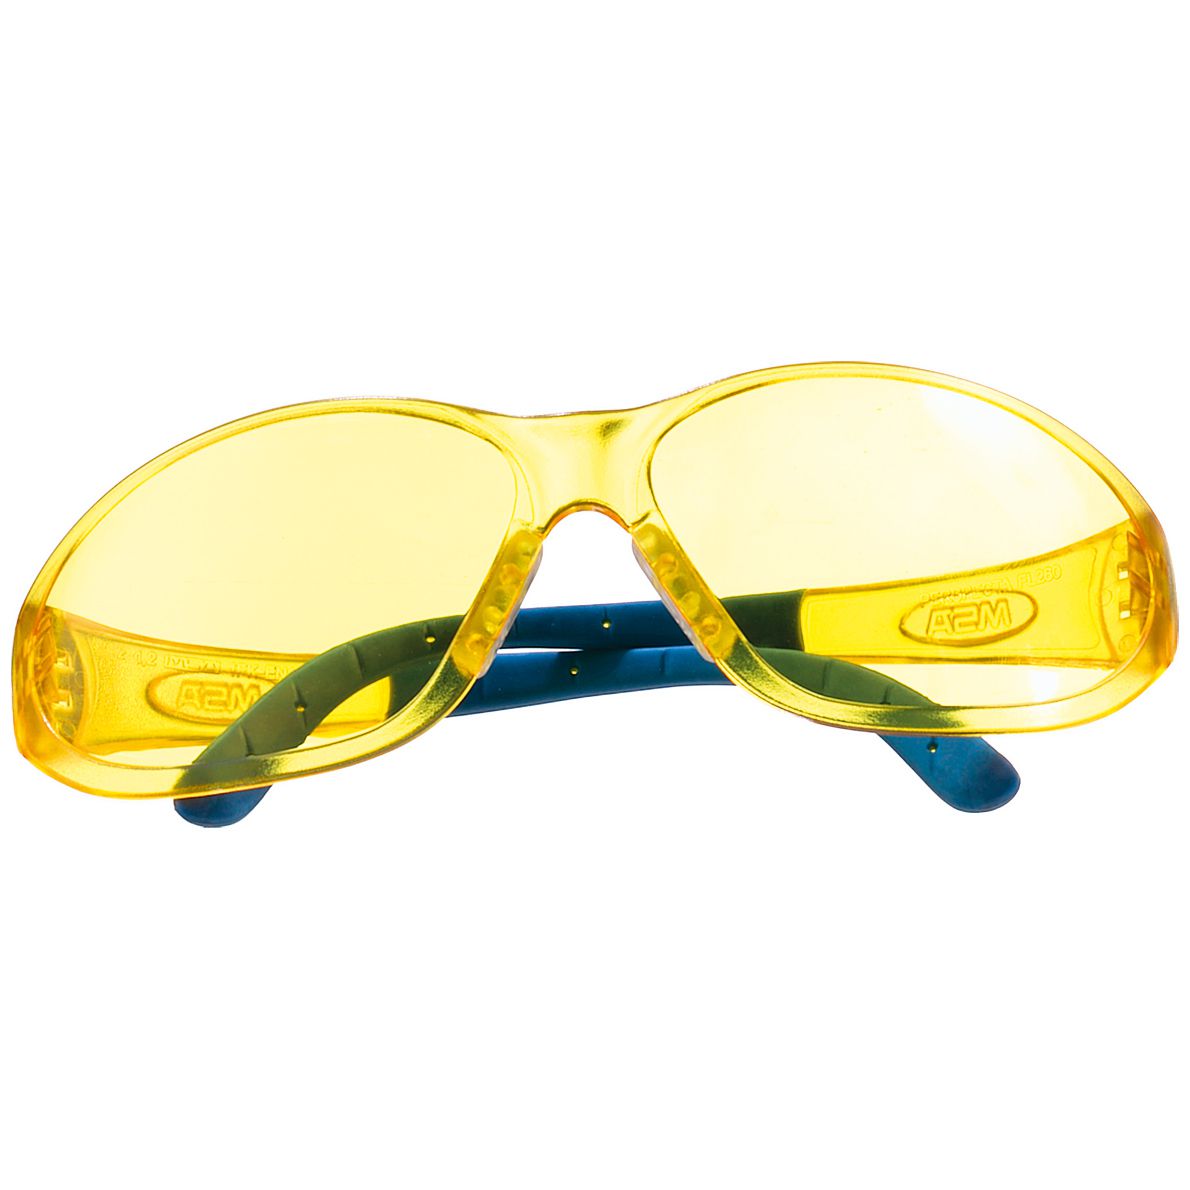 MSA Perspecta 9000 Schutzbrille - kratz- & beschlagfest dank Sightgard-Beschichtung - EN 166/170 - Schwarz/Gelb